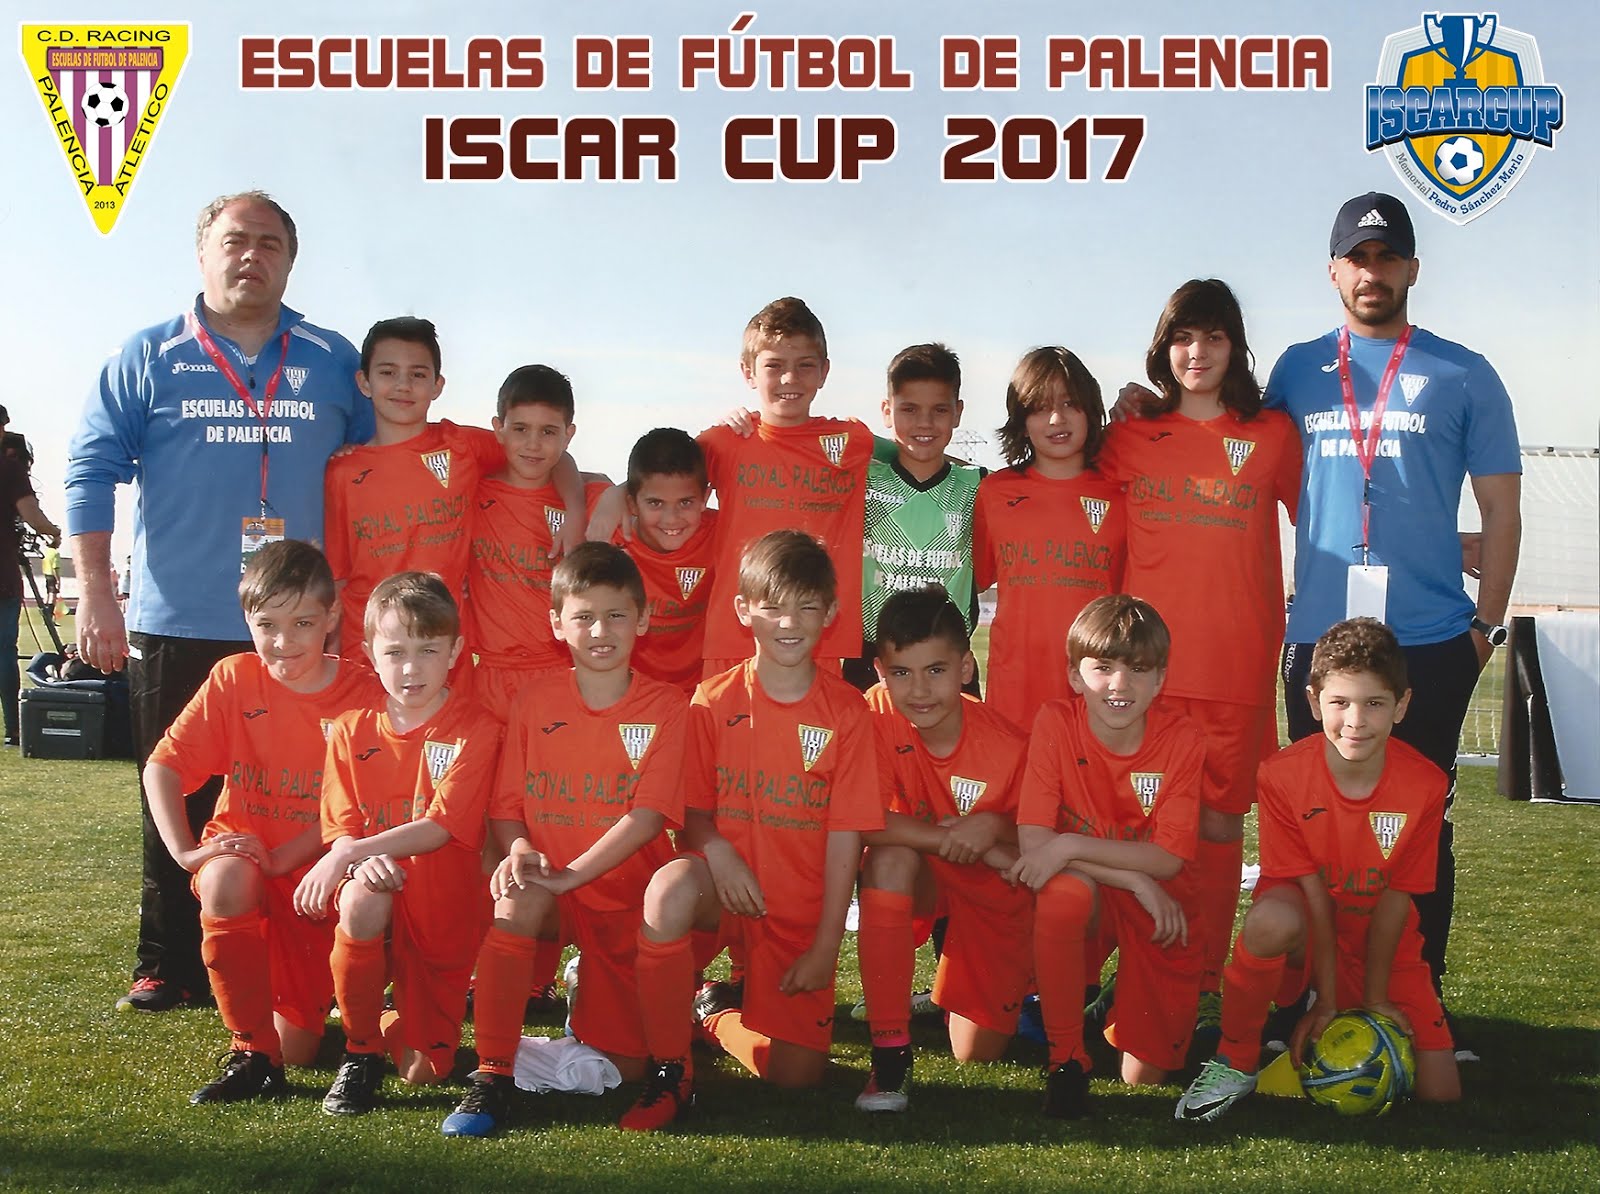 ISCAR CUP 2017 - HACIENDO HISTORIA